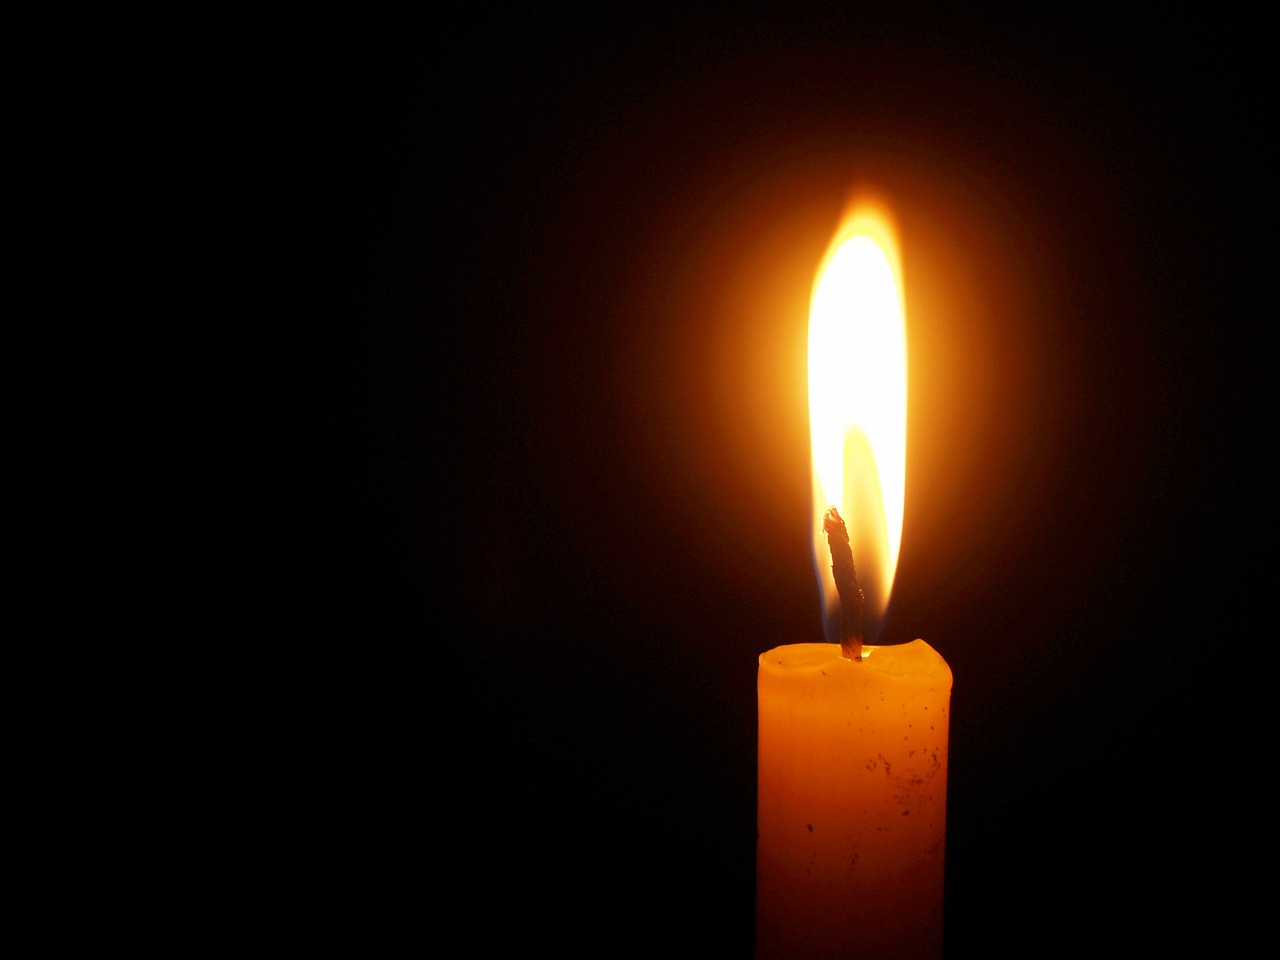 Έφυγε από την ζωή ο Αθανάσιος Τζιόλας σε ηλικία 77 ετών- Η κηδεία θα τελεστεί σήμερα Τετάρτη 11 Ιανουαρίου